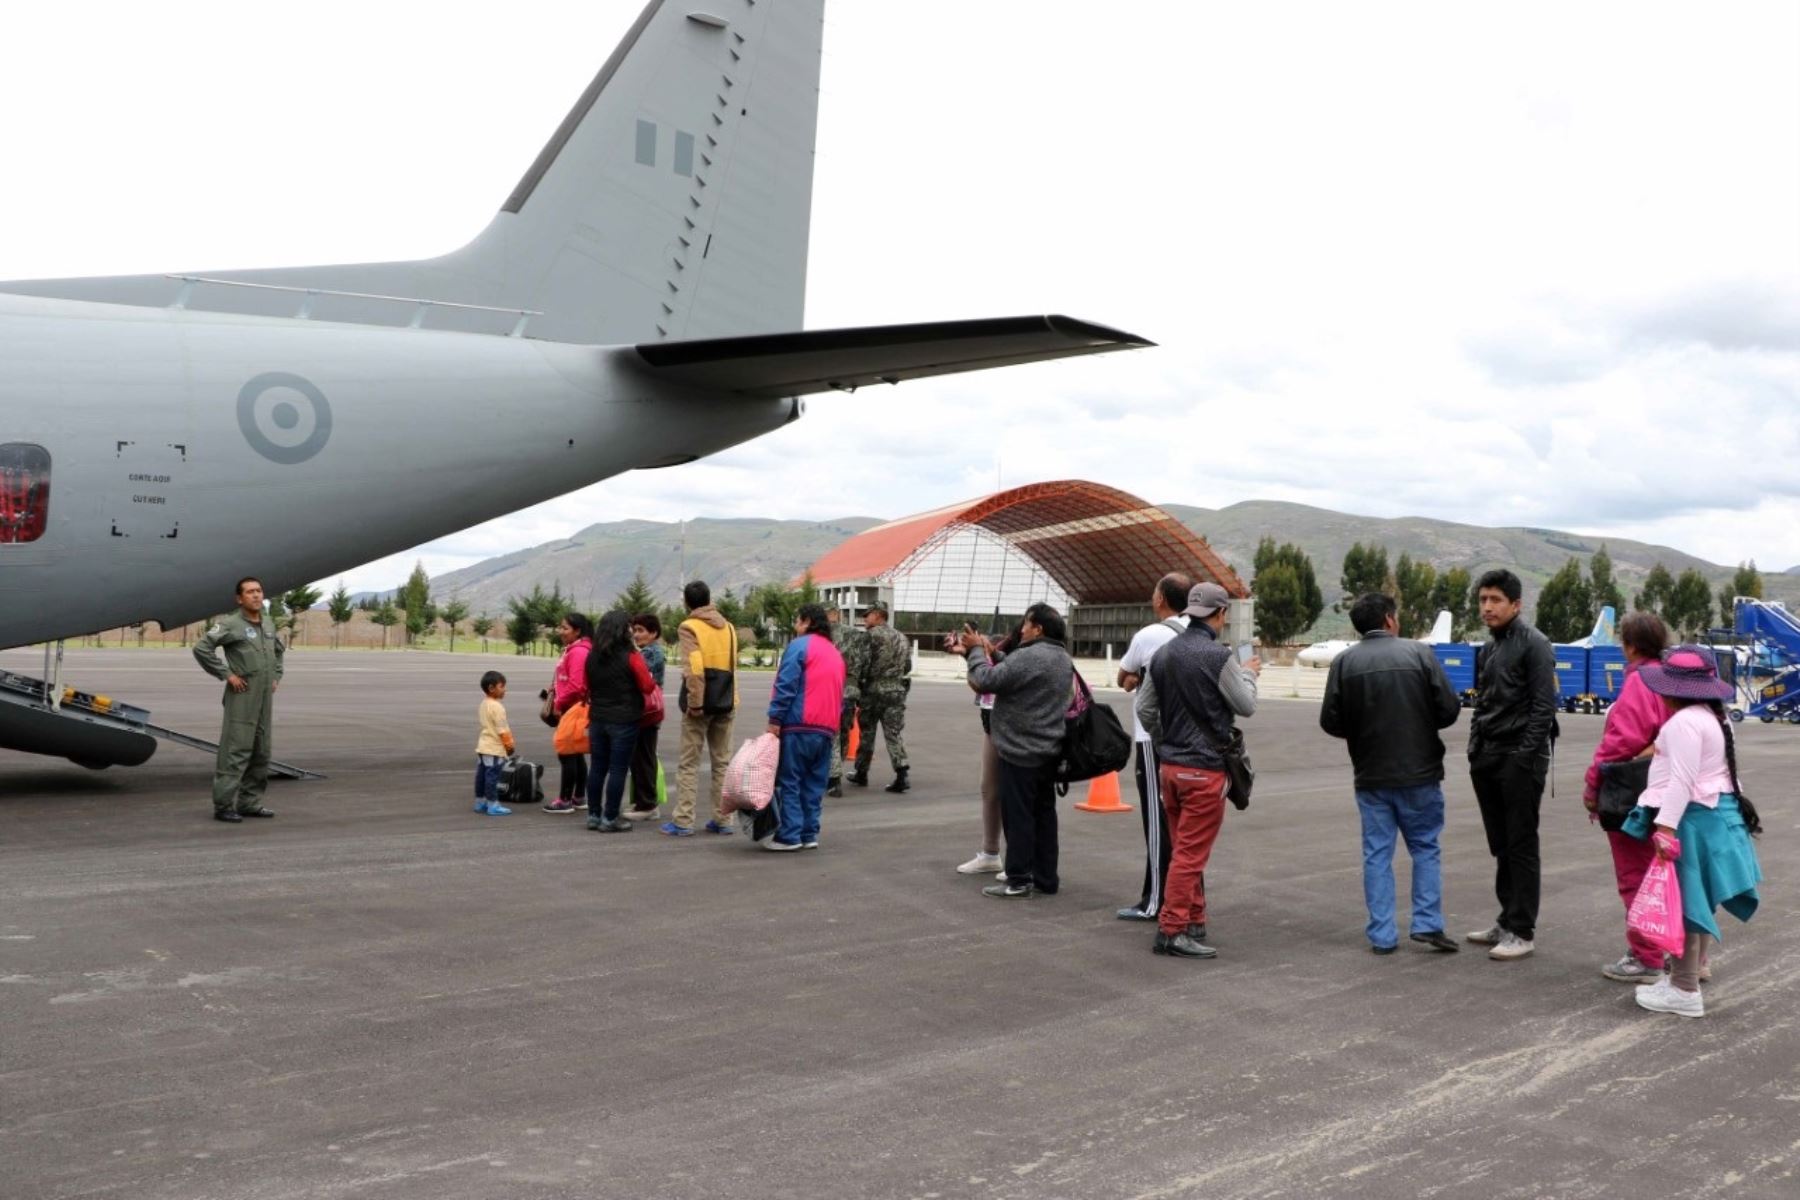 La Fuerza Aérea del Perú (FAP) trasladó hasta el momento a más de 1,400 personas en el puente aéreo entre Chiclayo, Piura, Trujillo y Lima, instaurado en la víspera para ayudar a las personas de esas regiones donde las carreteras resultaron afectadas por las torrenciales lluvias.